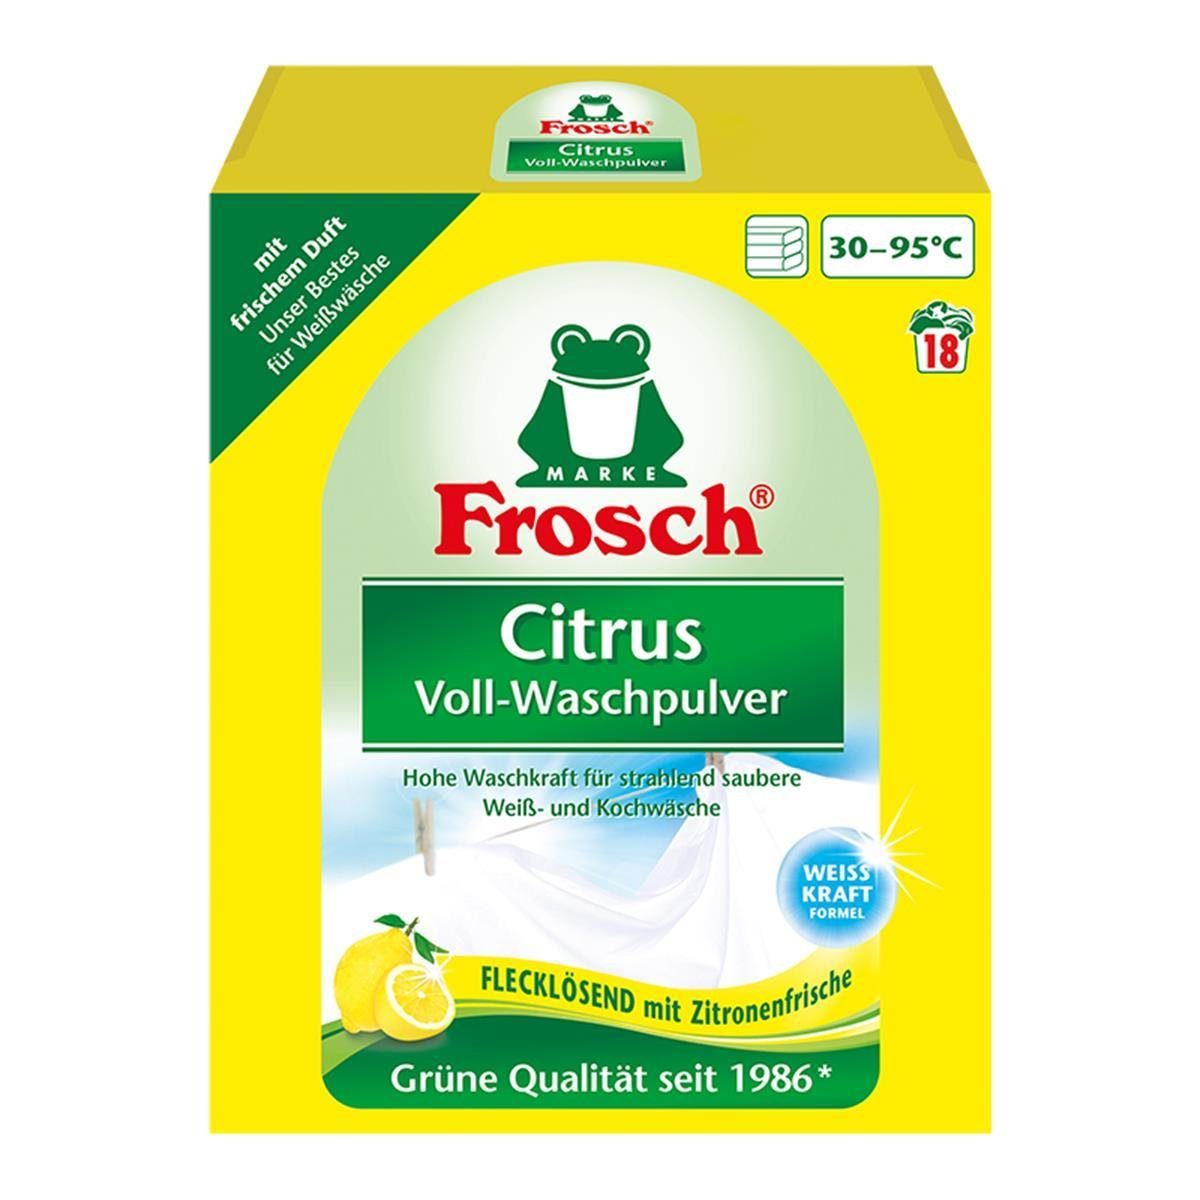 FROSCH Frosch Citrus Voll-Waschpulver 1,35 kg - Flecklösend mit Zitrone Vollwaschmittel